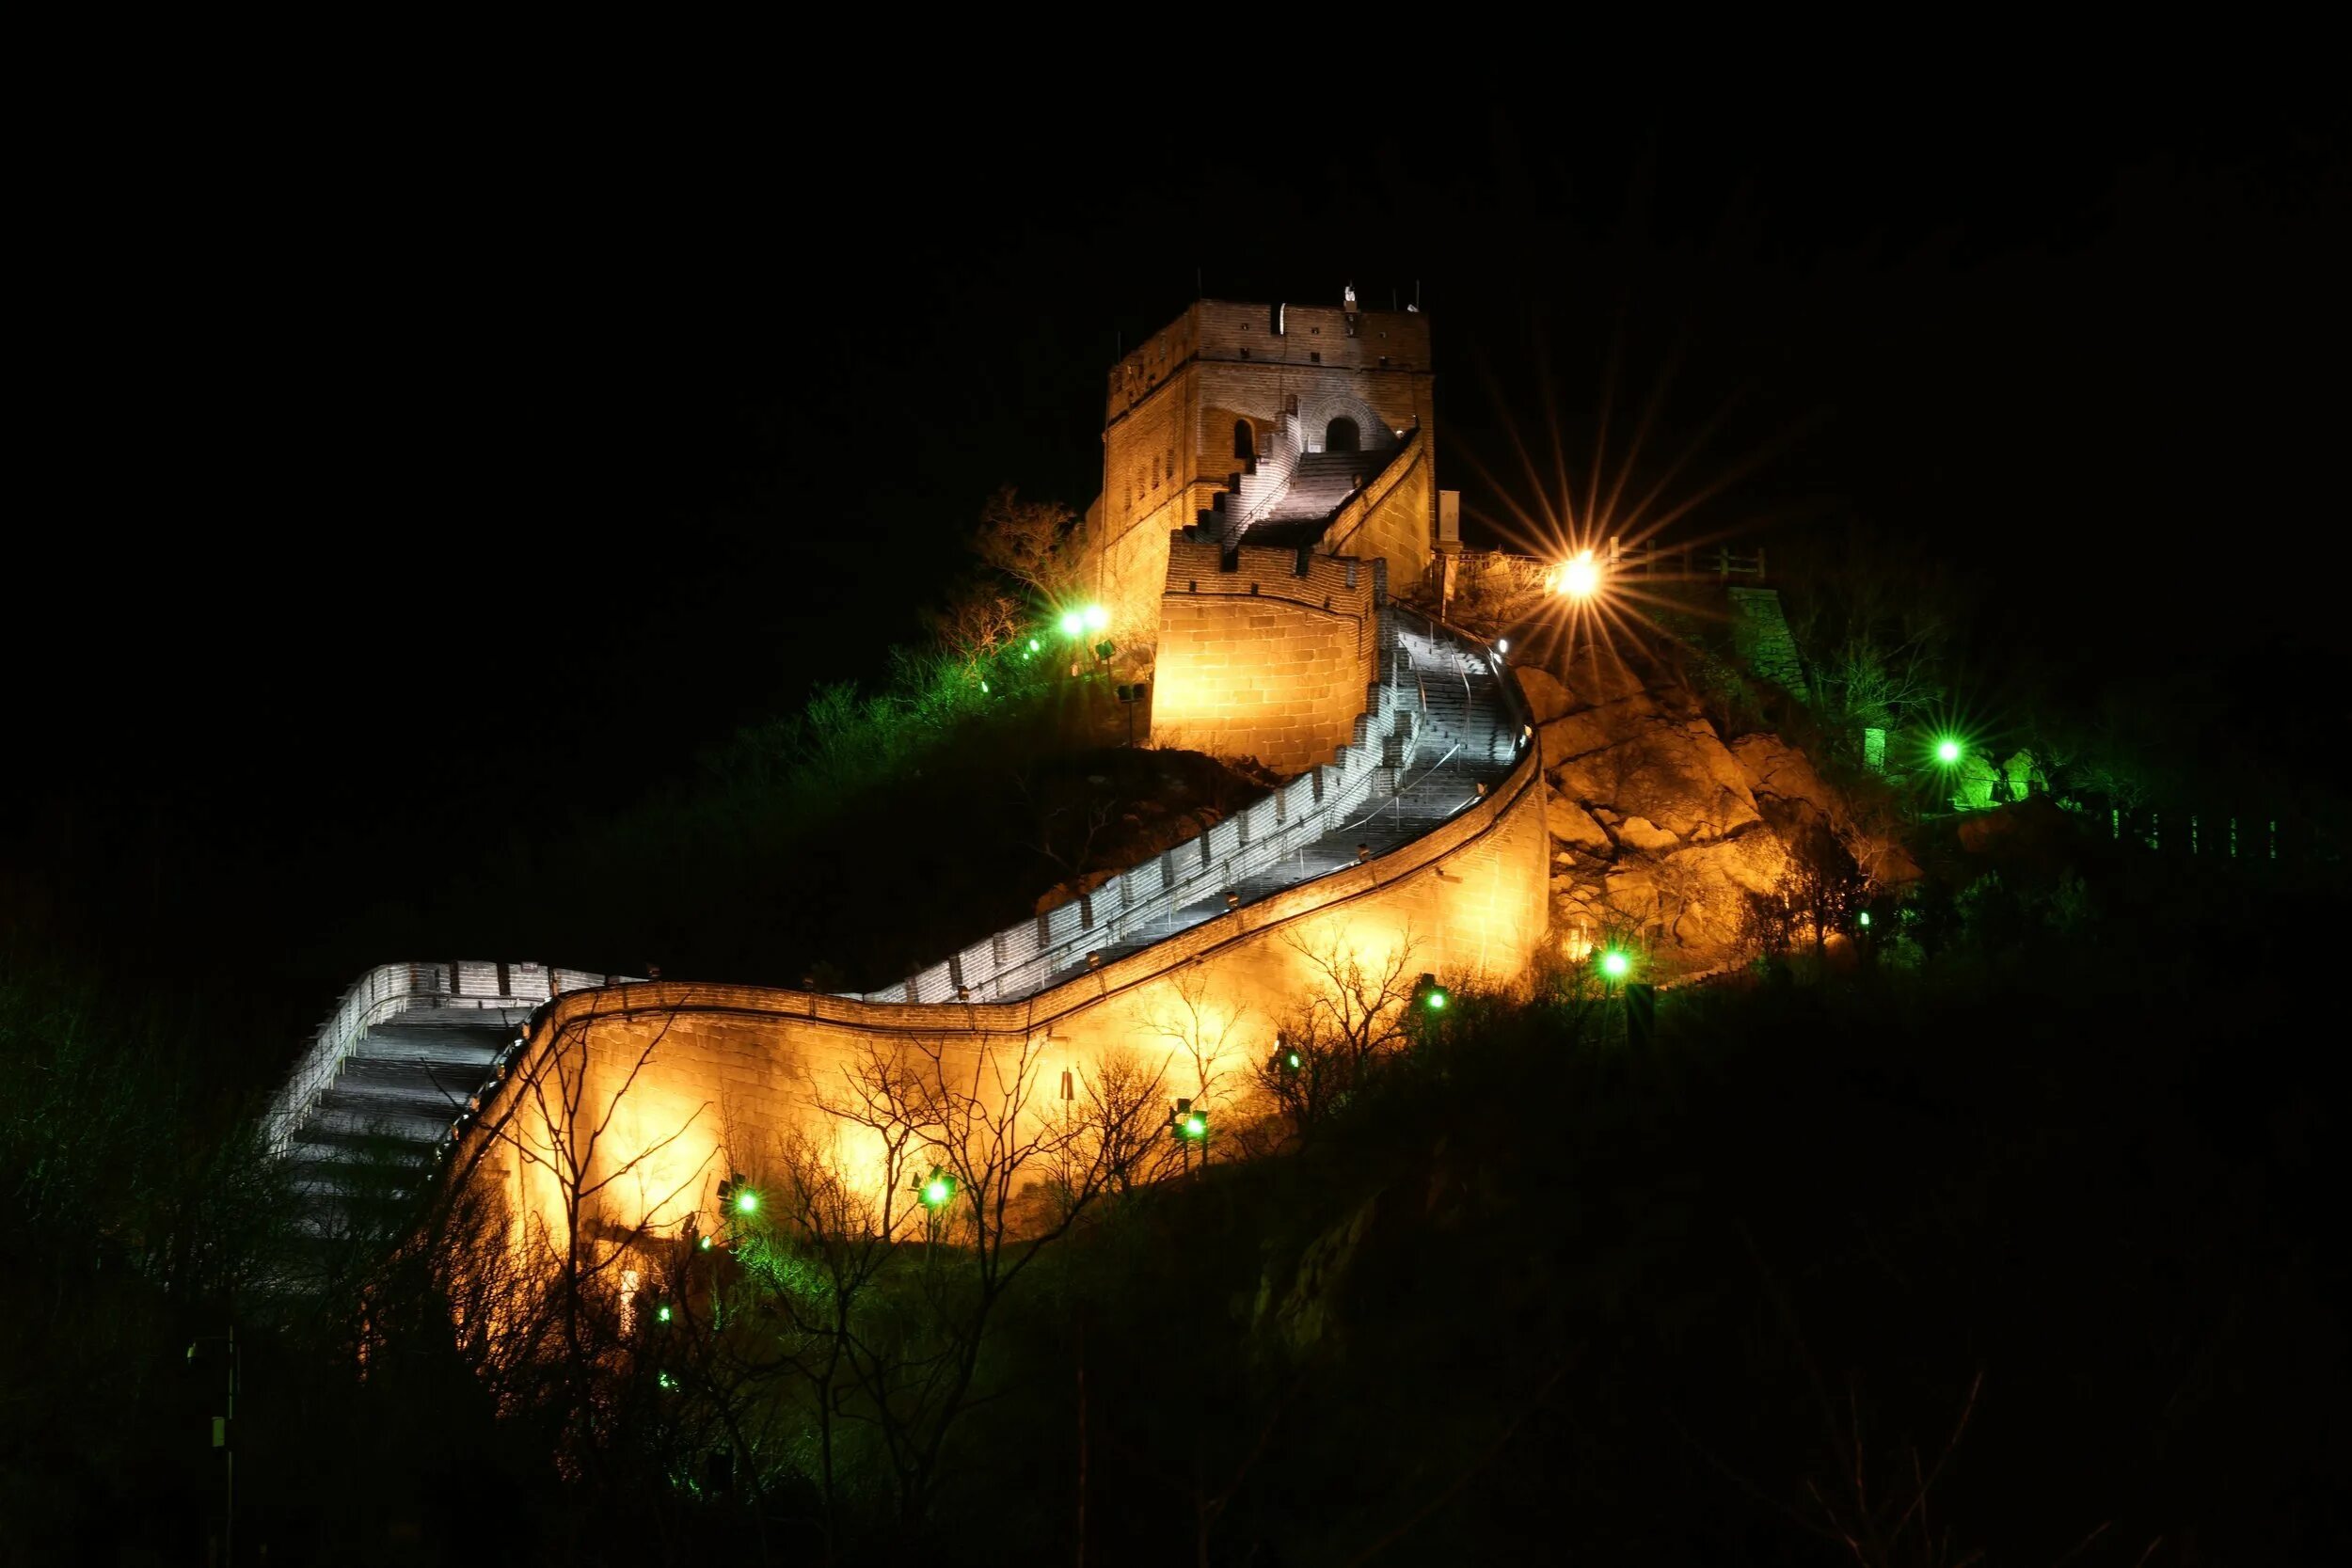 Края китайской стены. Бадалин Пекин. Шаньхайгуань китайская стена. Великая китайская стена Бадалин. Китайская стена в Москве.